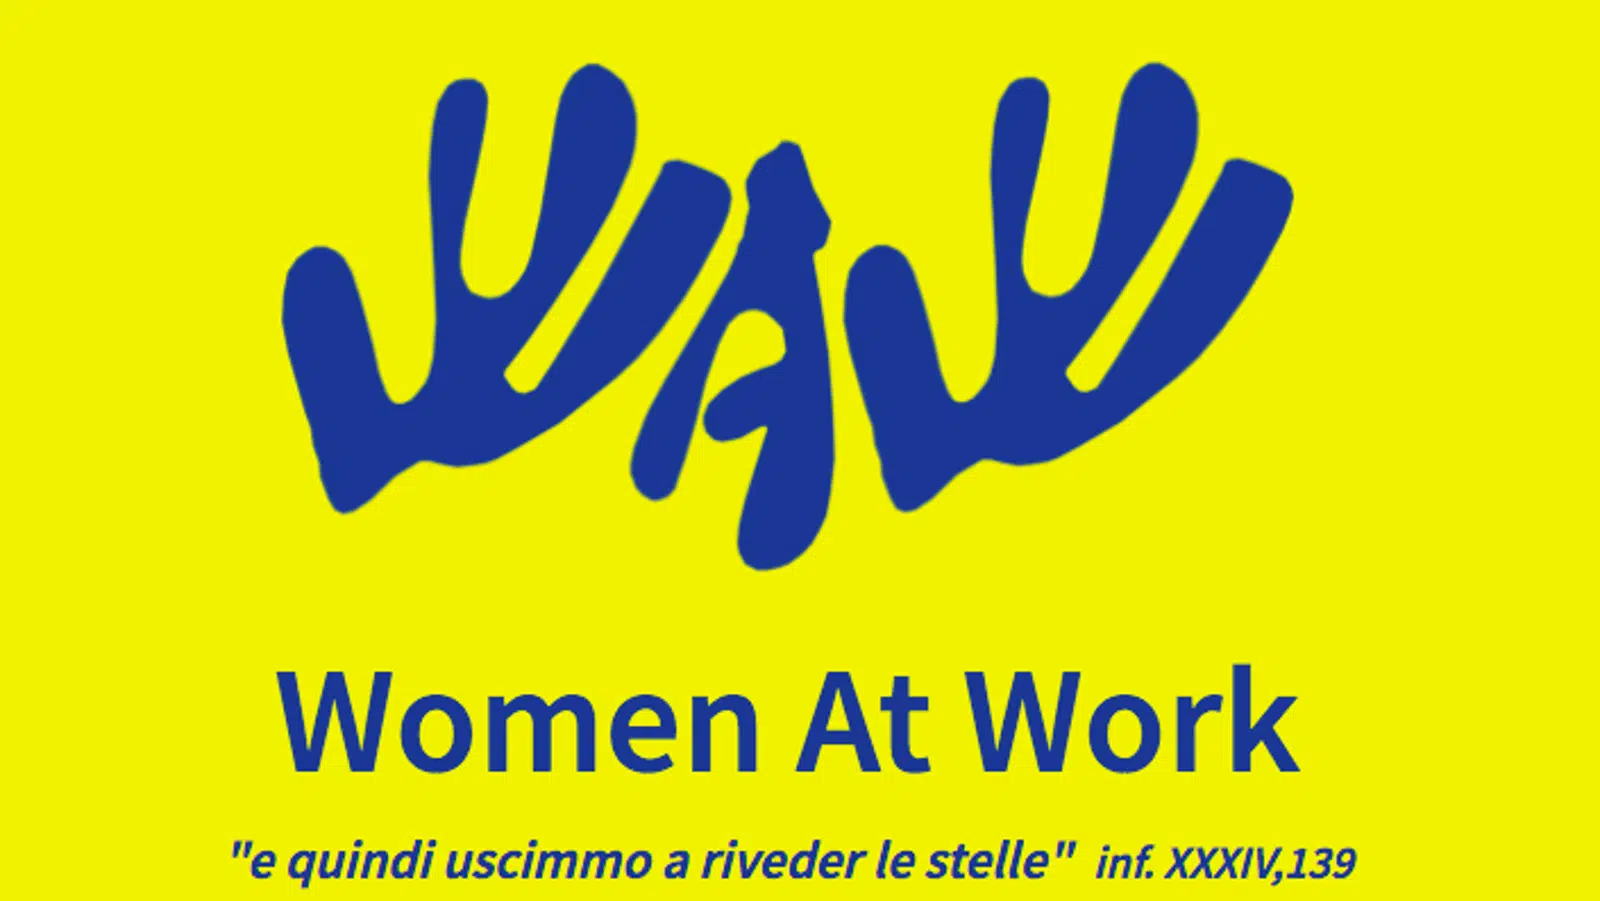 WAW - Women at Work l inclusione nel mondo del lavoro di donne fragili